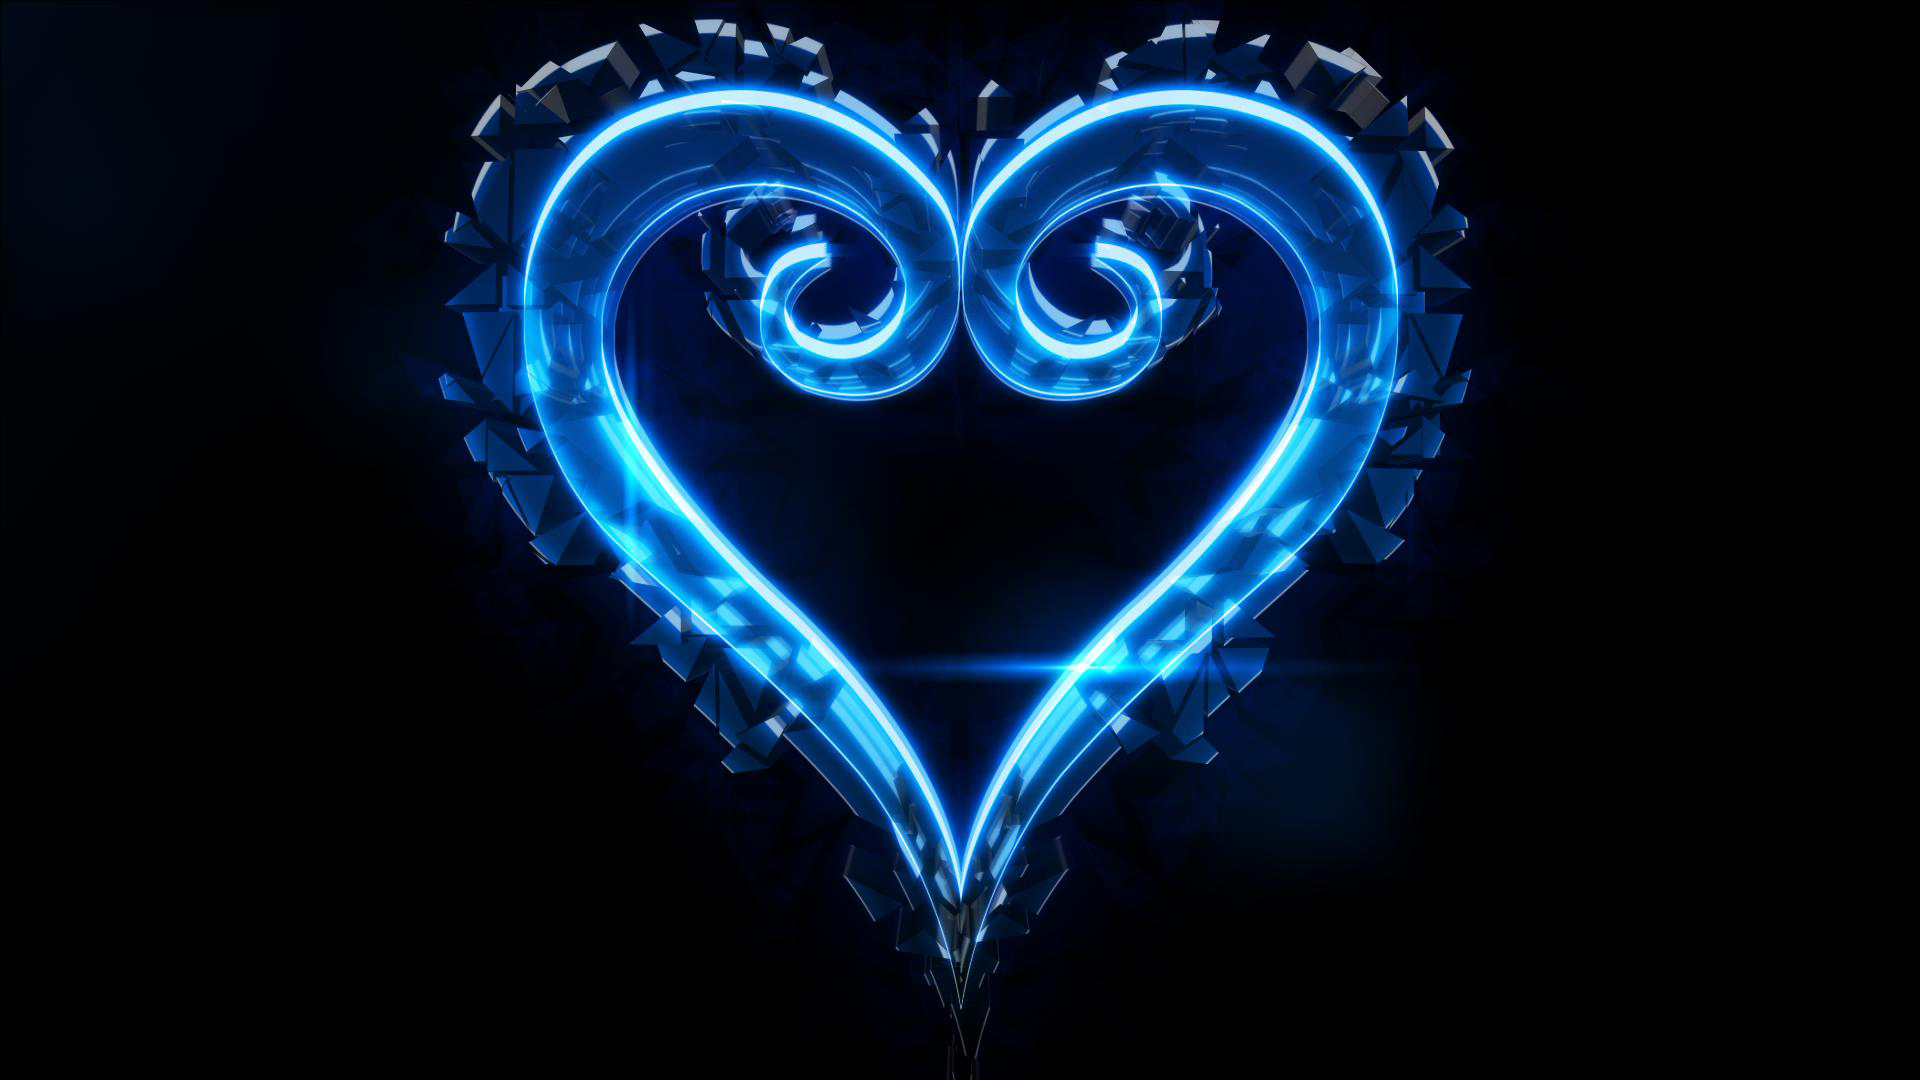 Download Beach Heart Light Blue Aesthetic iPhone Wallpaper  Wallpaperscom